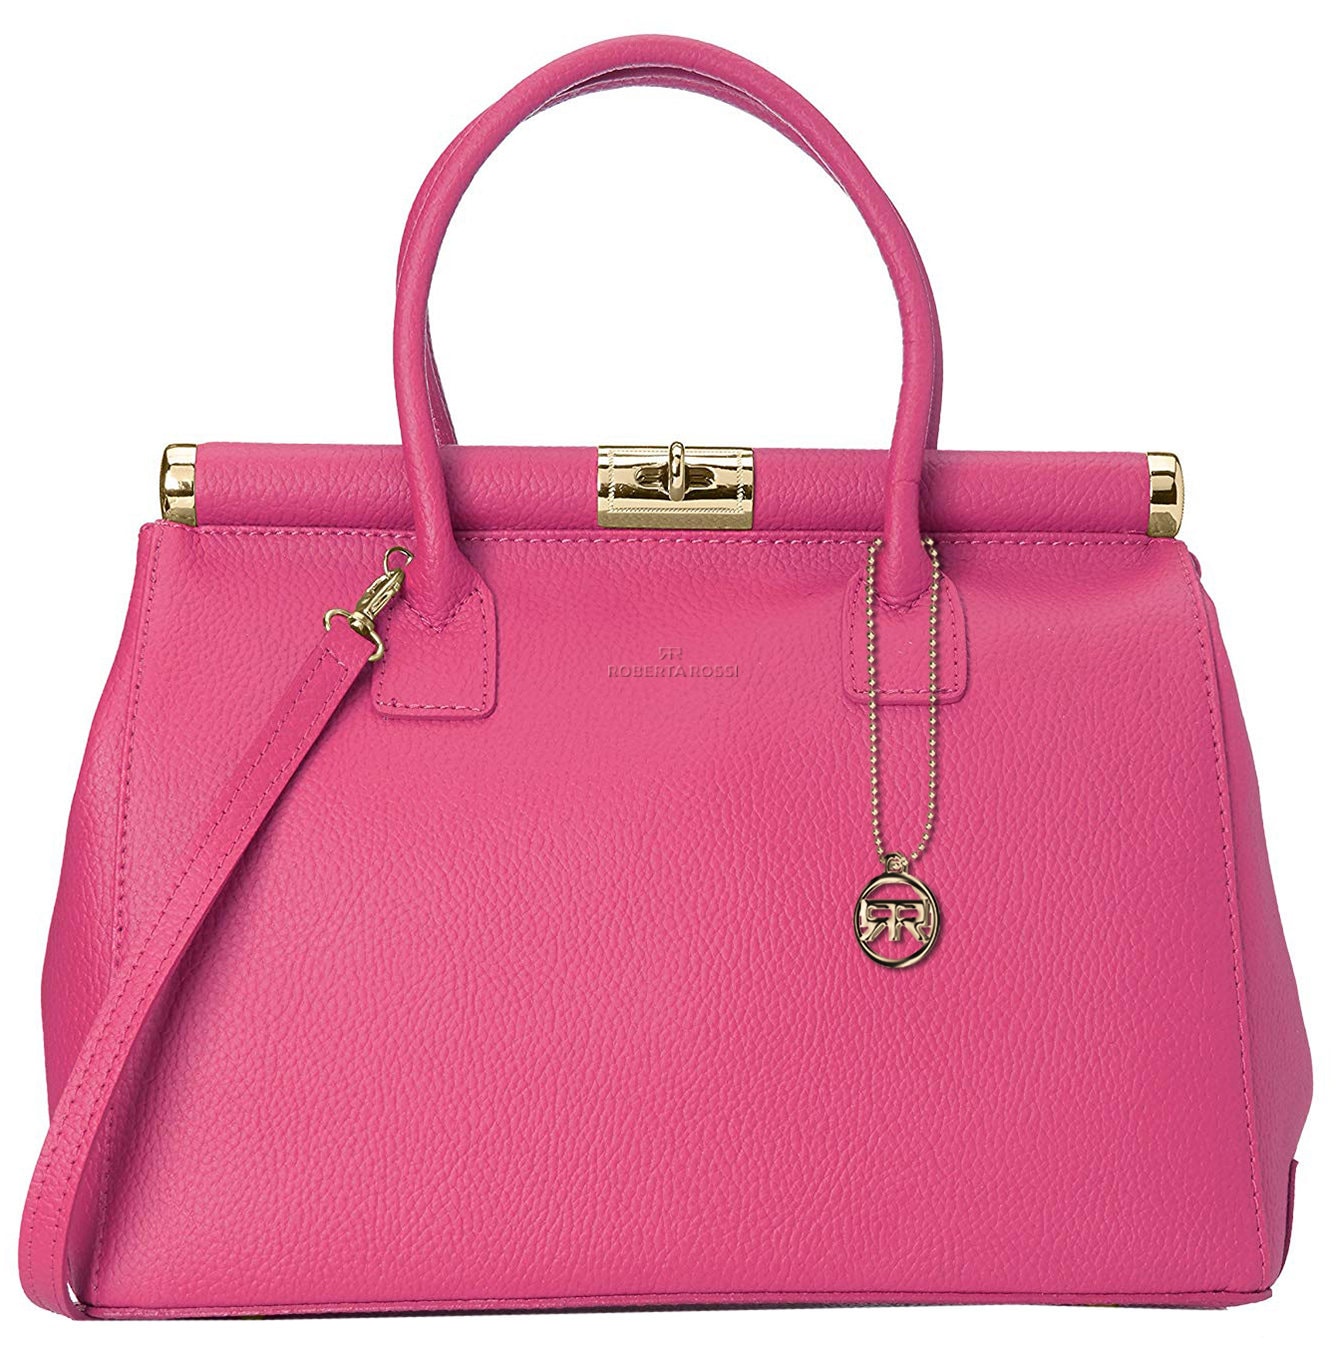 Roberta Rossi Handbag girl artisanal fashion casual Classic | Etsy